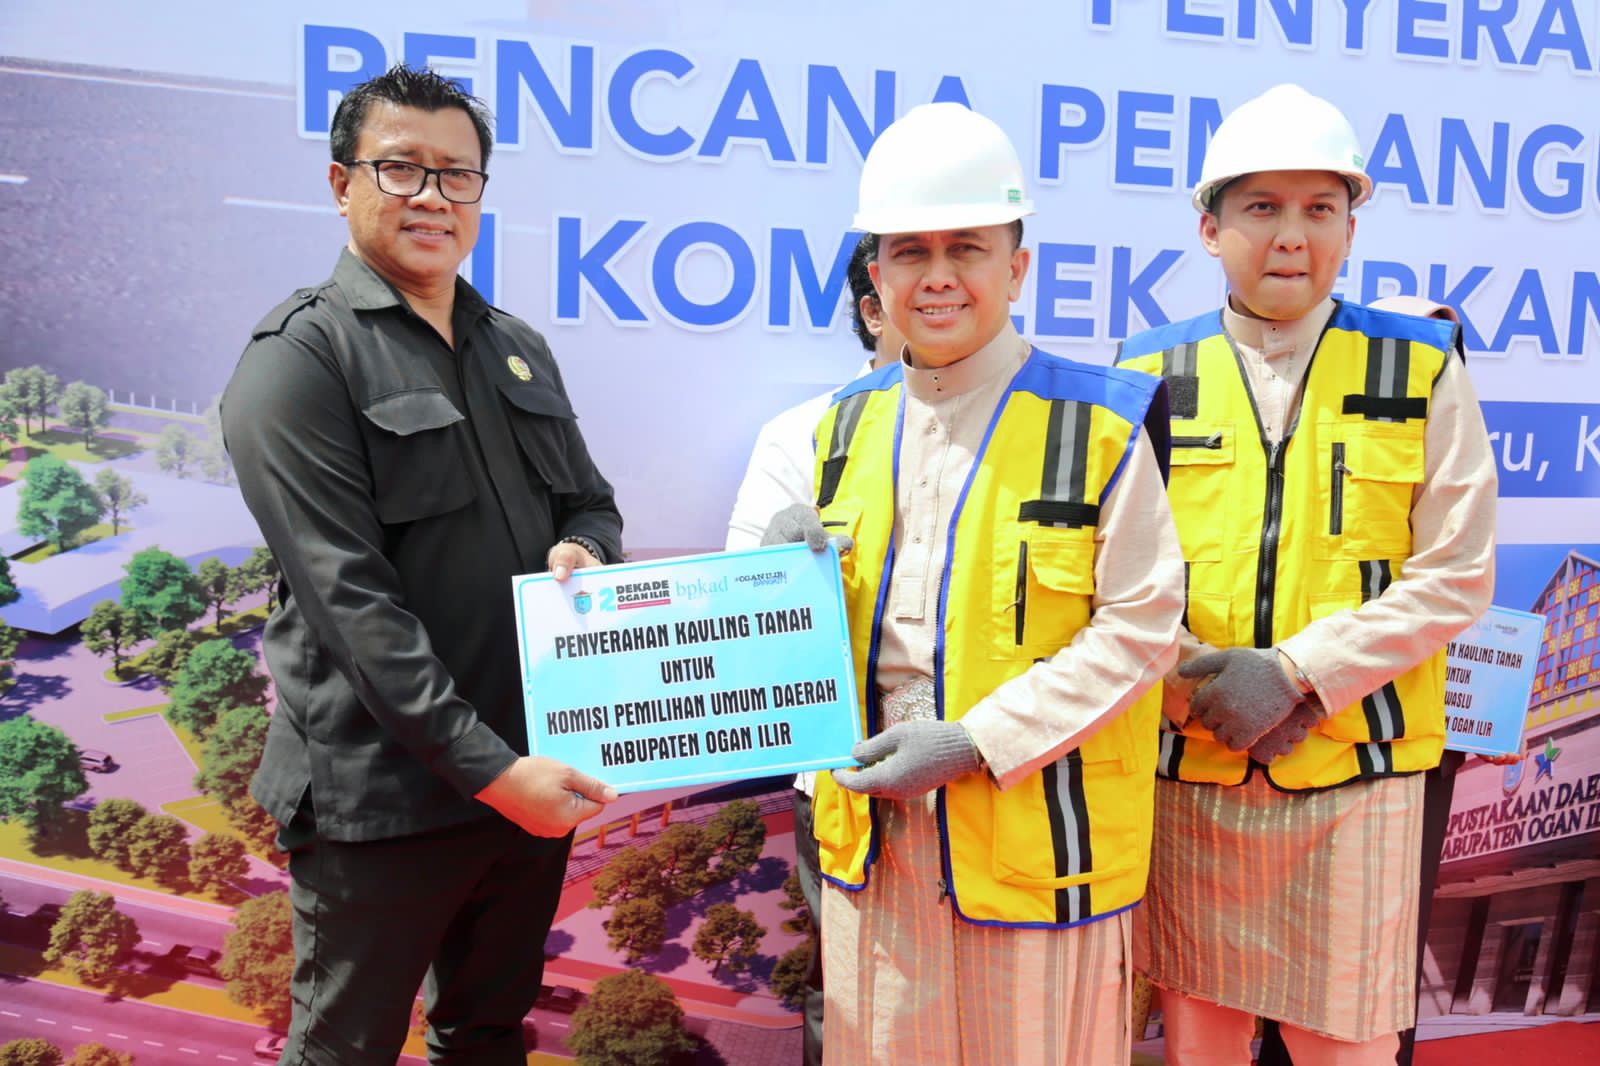 Pj Gubernur Sumsel Lakukan Peletakan Batu Pertama Pembangunan Kantor Vertikal di Ogan Ilir, Ini Harapannya